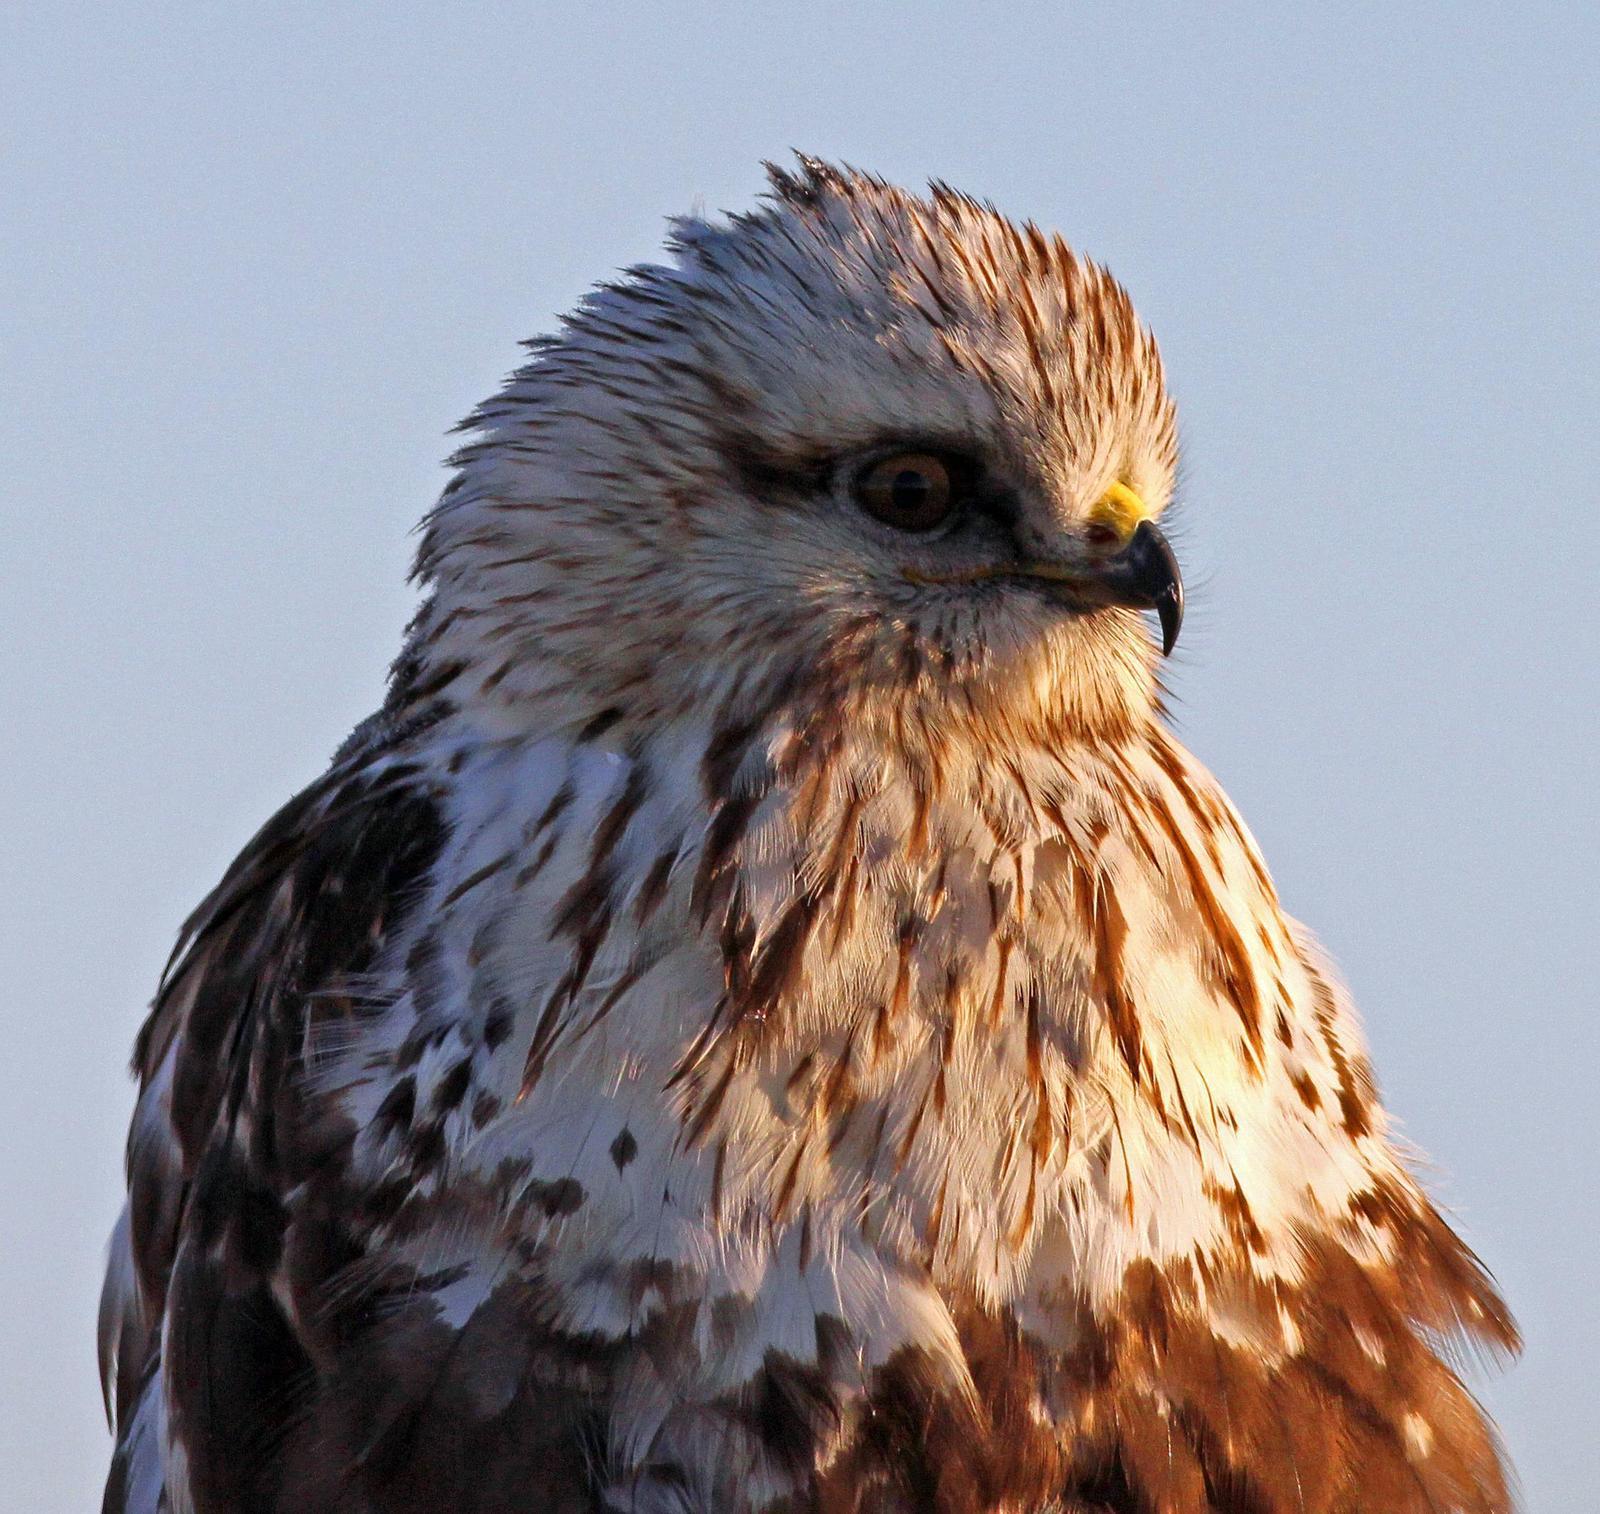 Rough-legged Hawk Photo by Tom Gannon